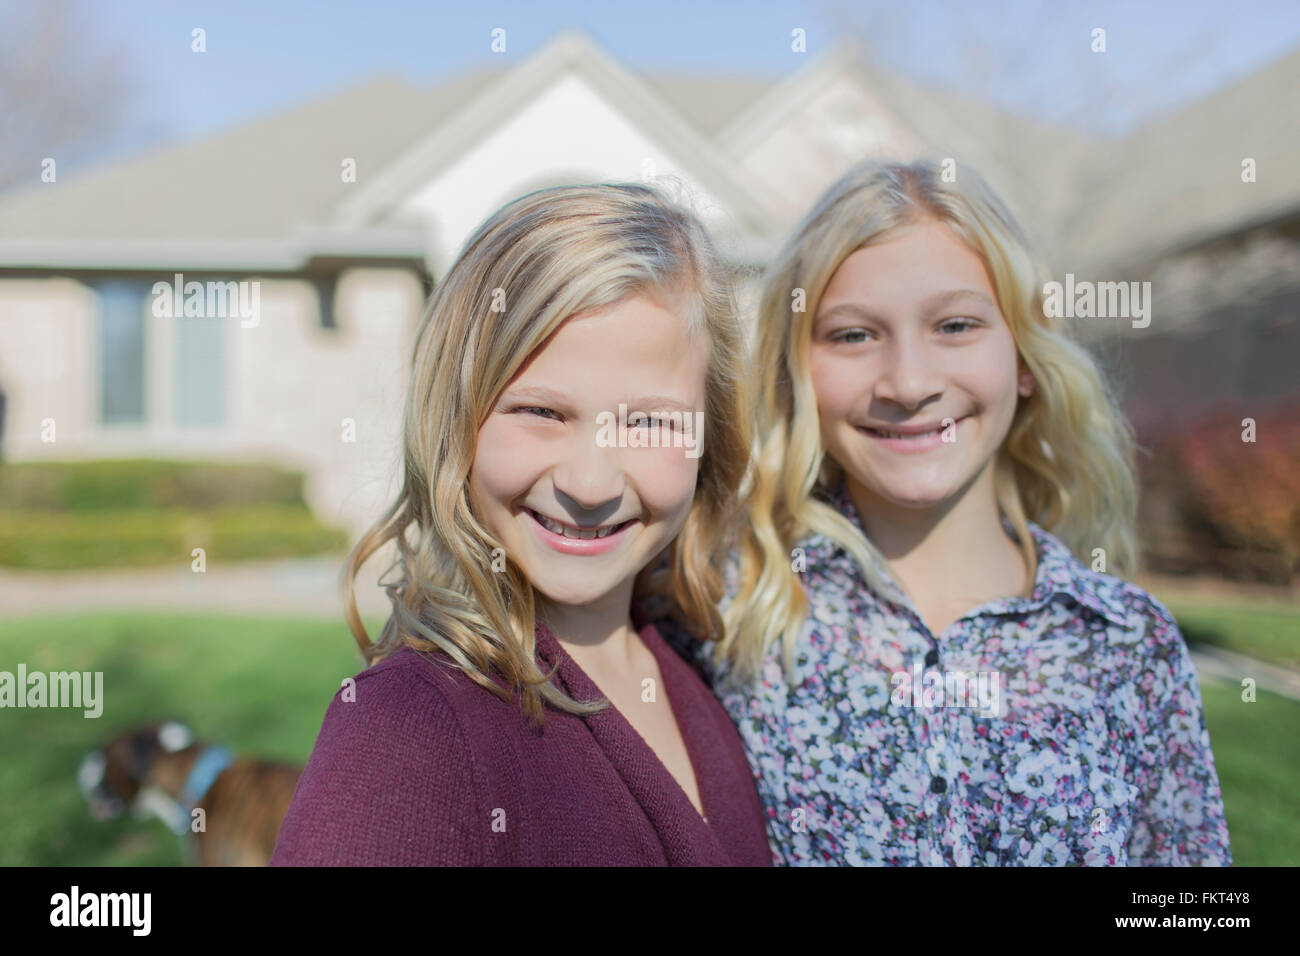 Las niñas de raza blanca sonriente en patio Foto de stock